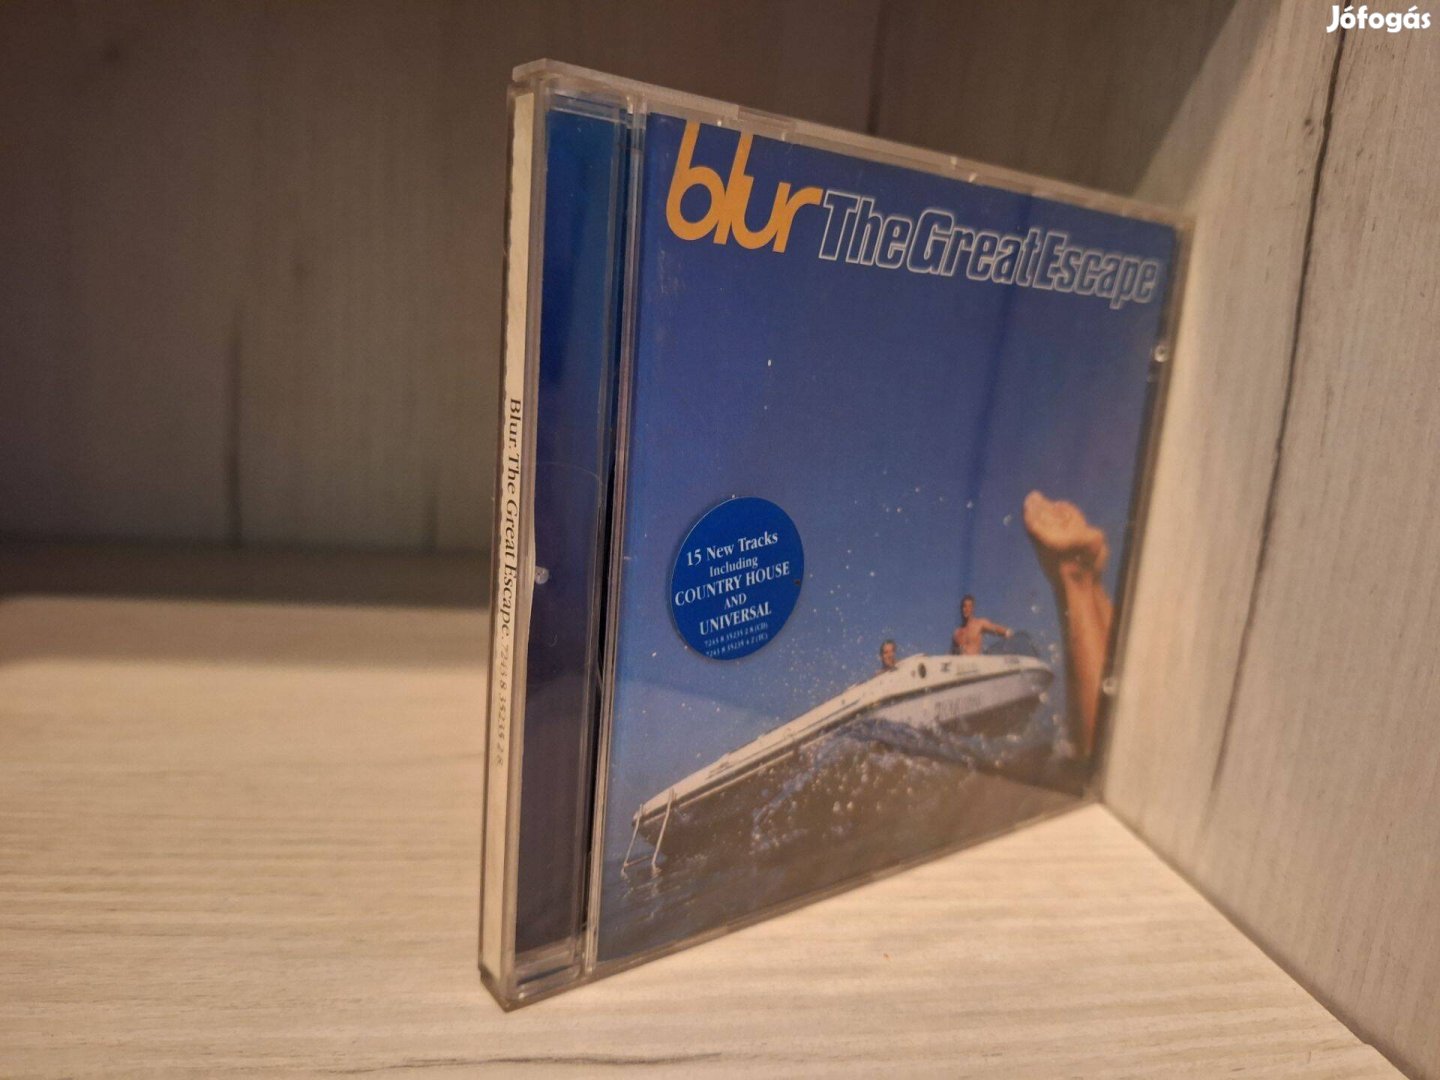 Blur - The Great Escape CD